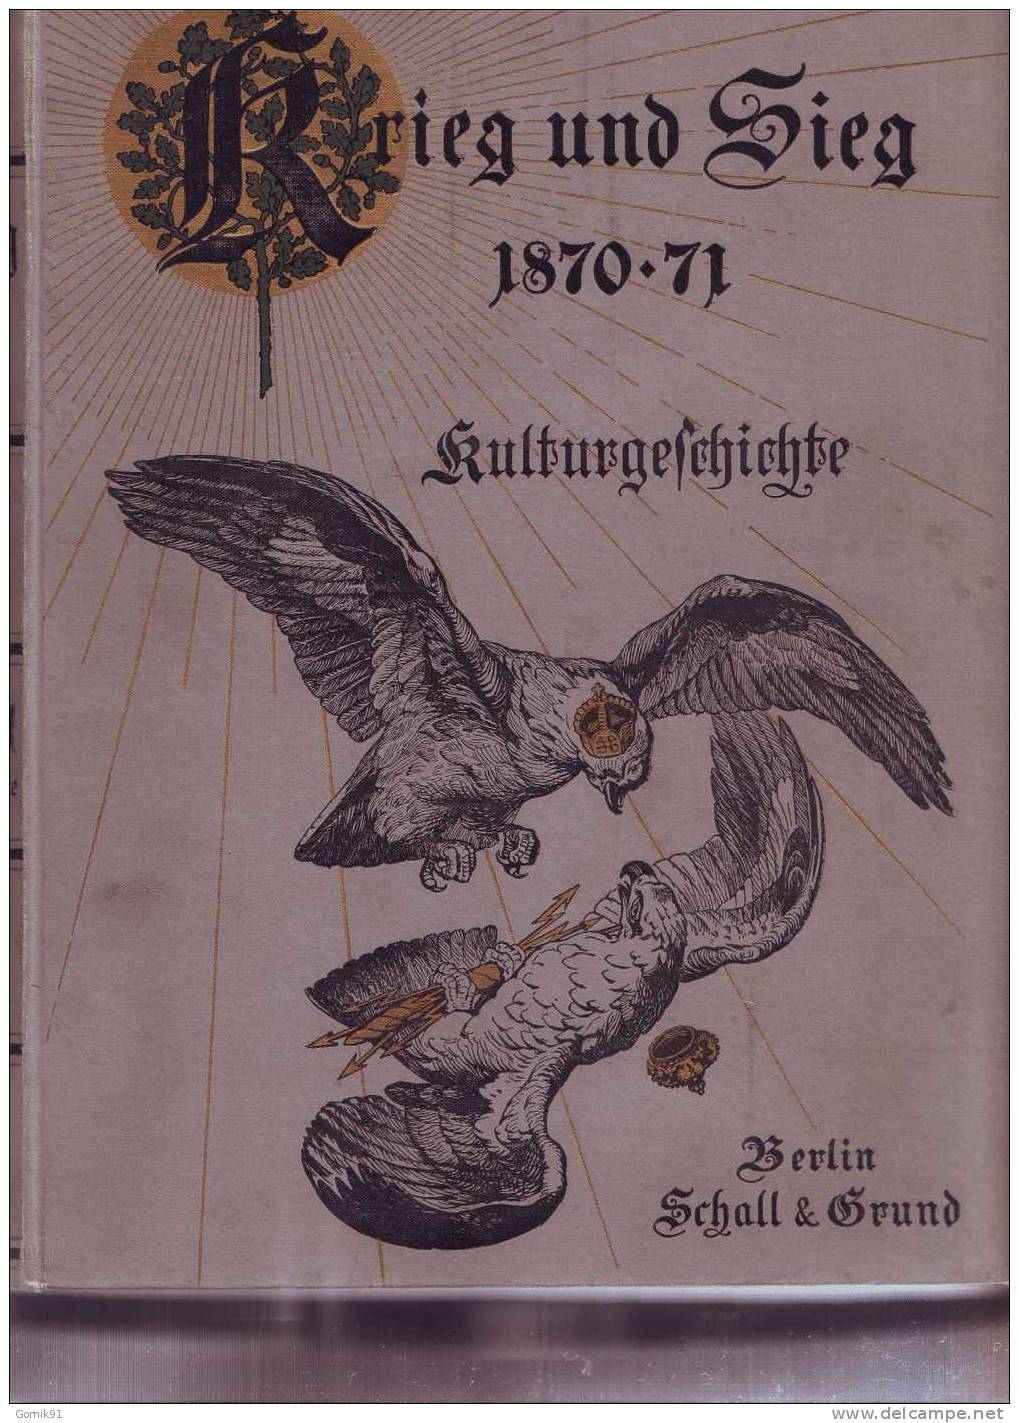 Krieg Und Sieg 1870-71 Kulturgeschichte- Guerre De 1870 - 4. 1789-1914